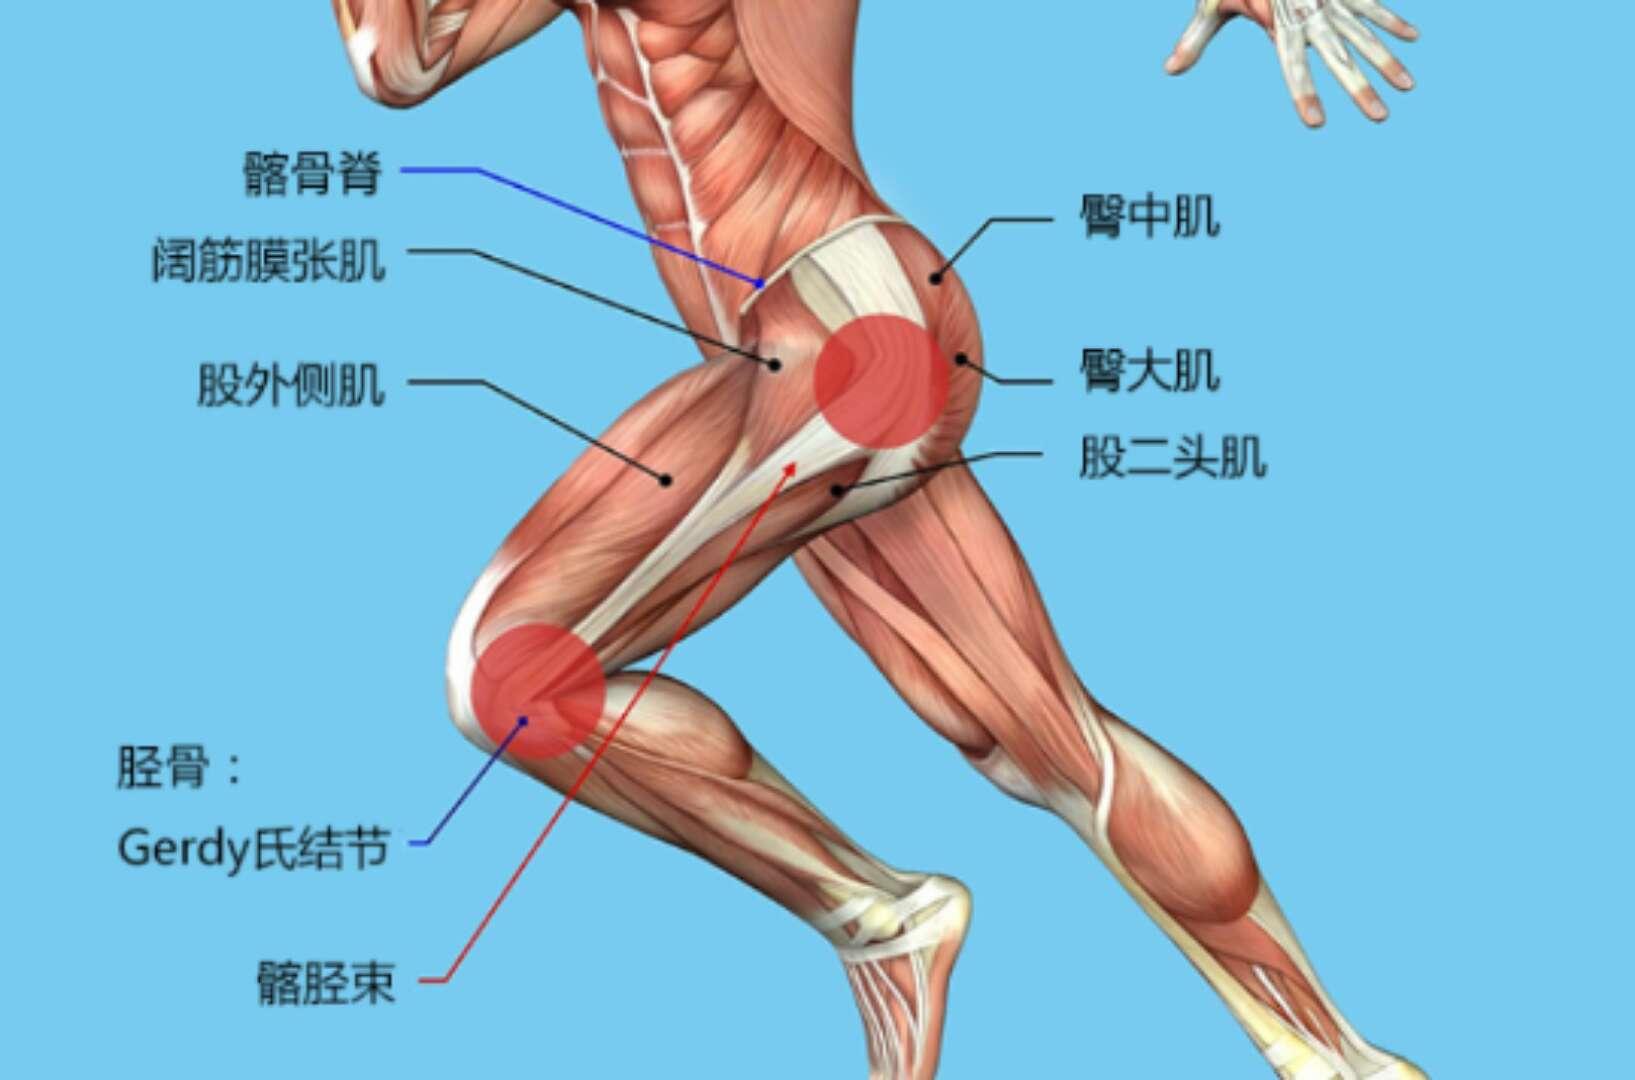 髂胫束症候群主要的症状是大腿外侧紧绷,这种紧绷感有两面性,一种出现